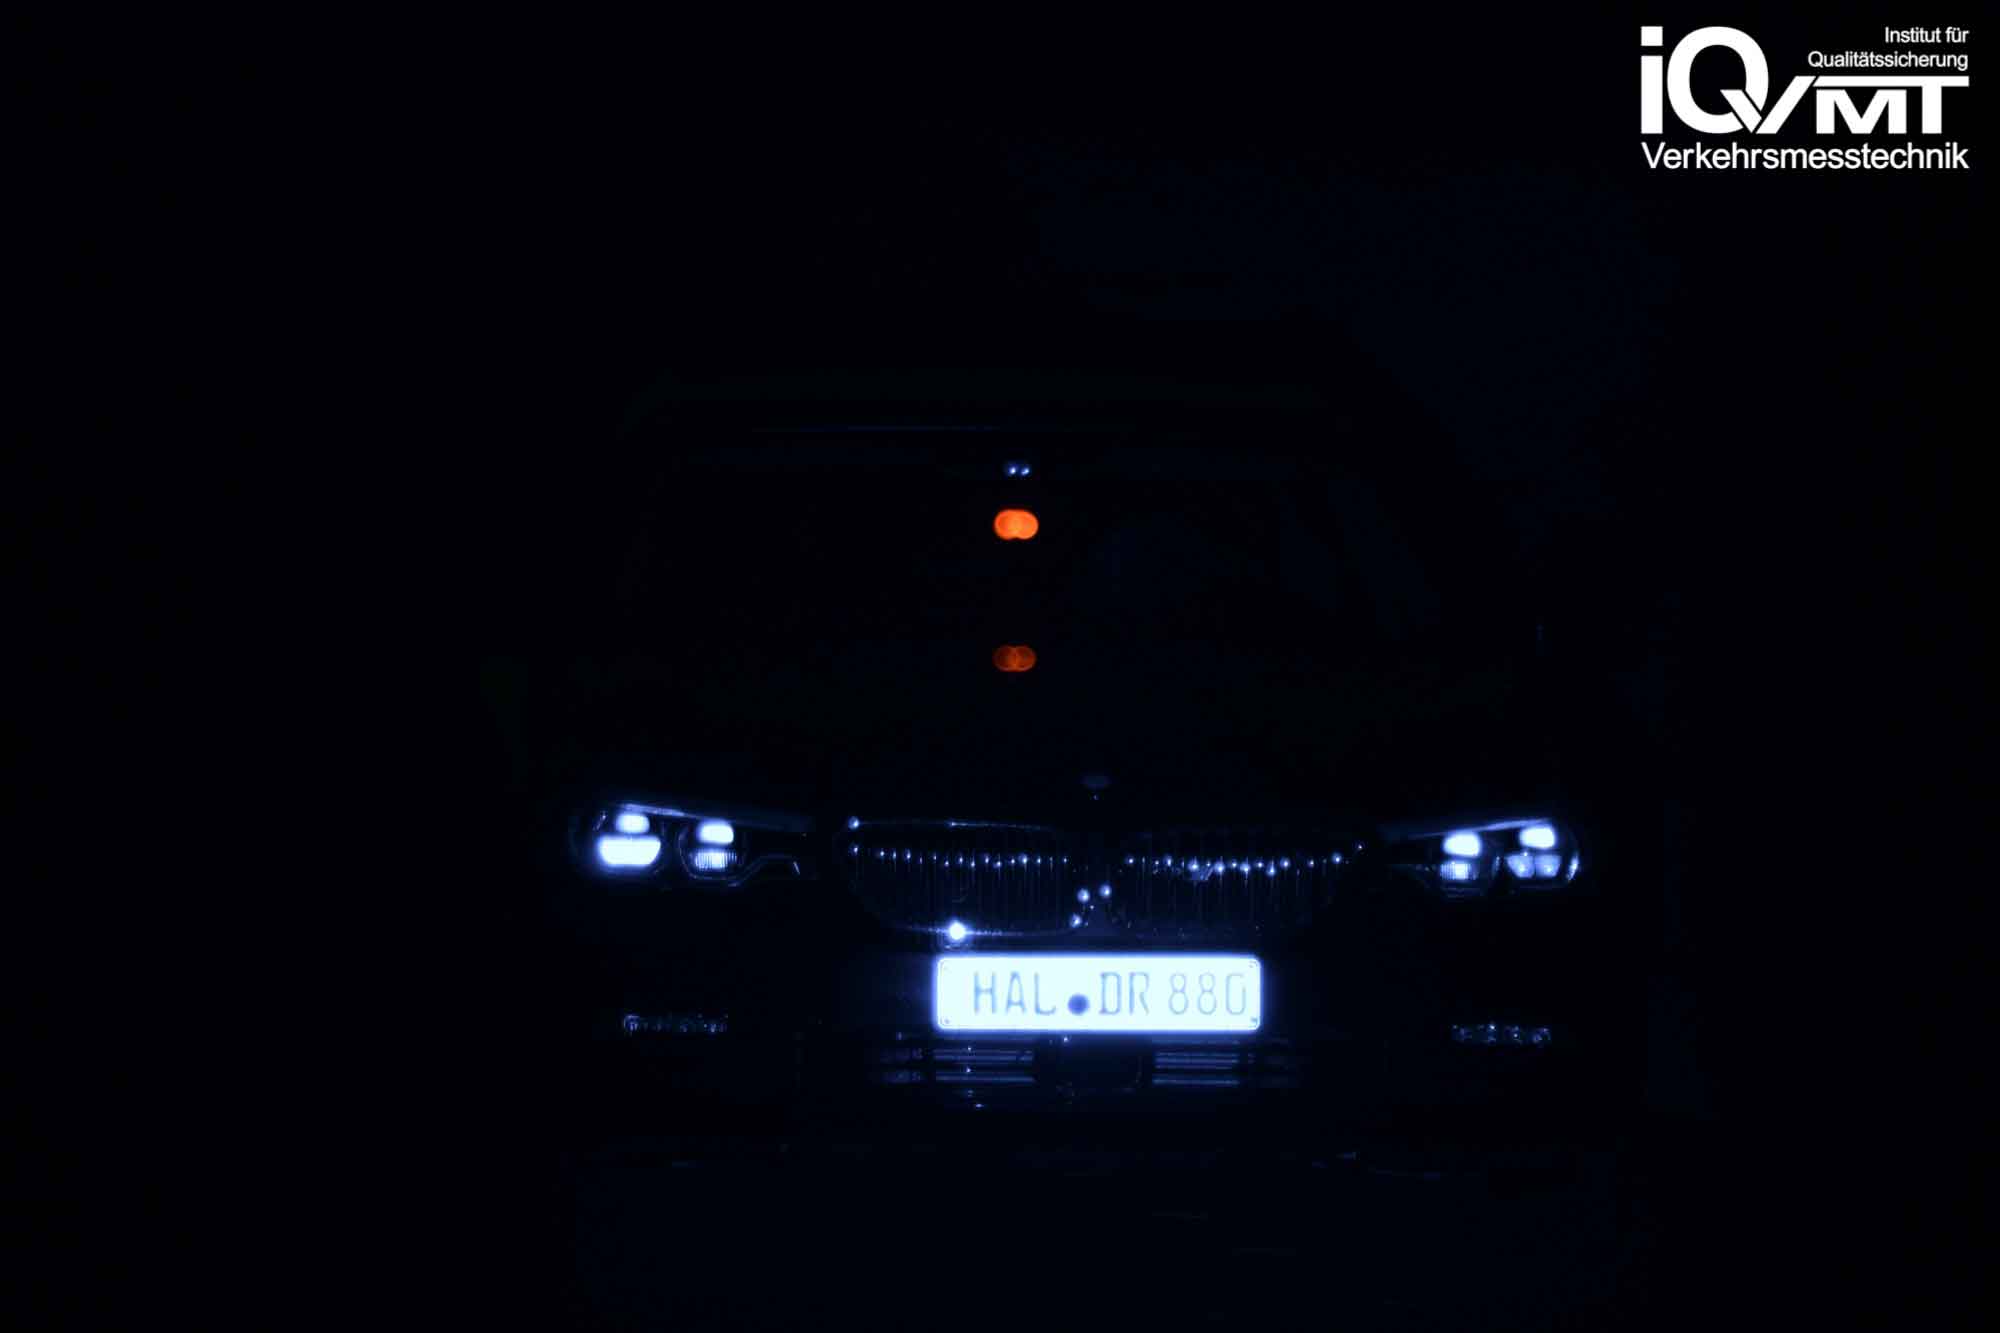 iQvmt - Infrarotfoto zur Refektivität der messrelevanten IR-Laserstrahlung am  BMW 5